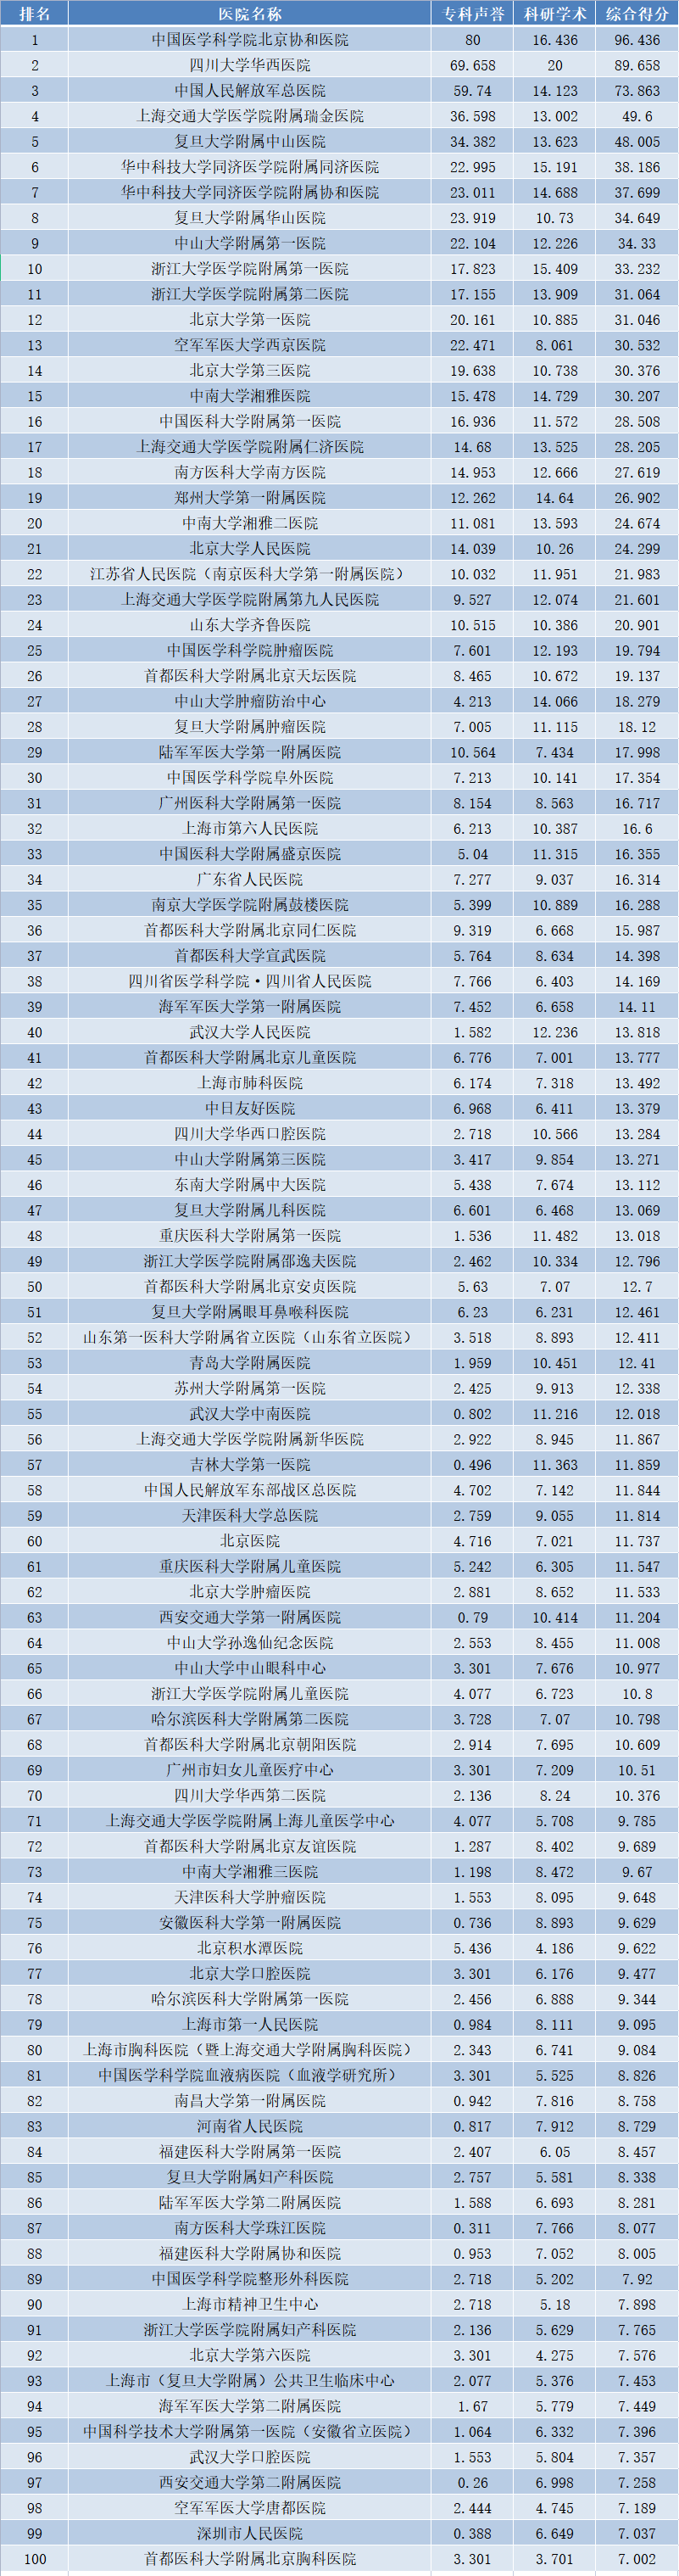 复旦版中国<font color="red">医院</font>排行榜发布，附综合排名前100，以及40个专科排名